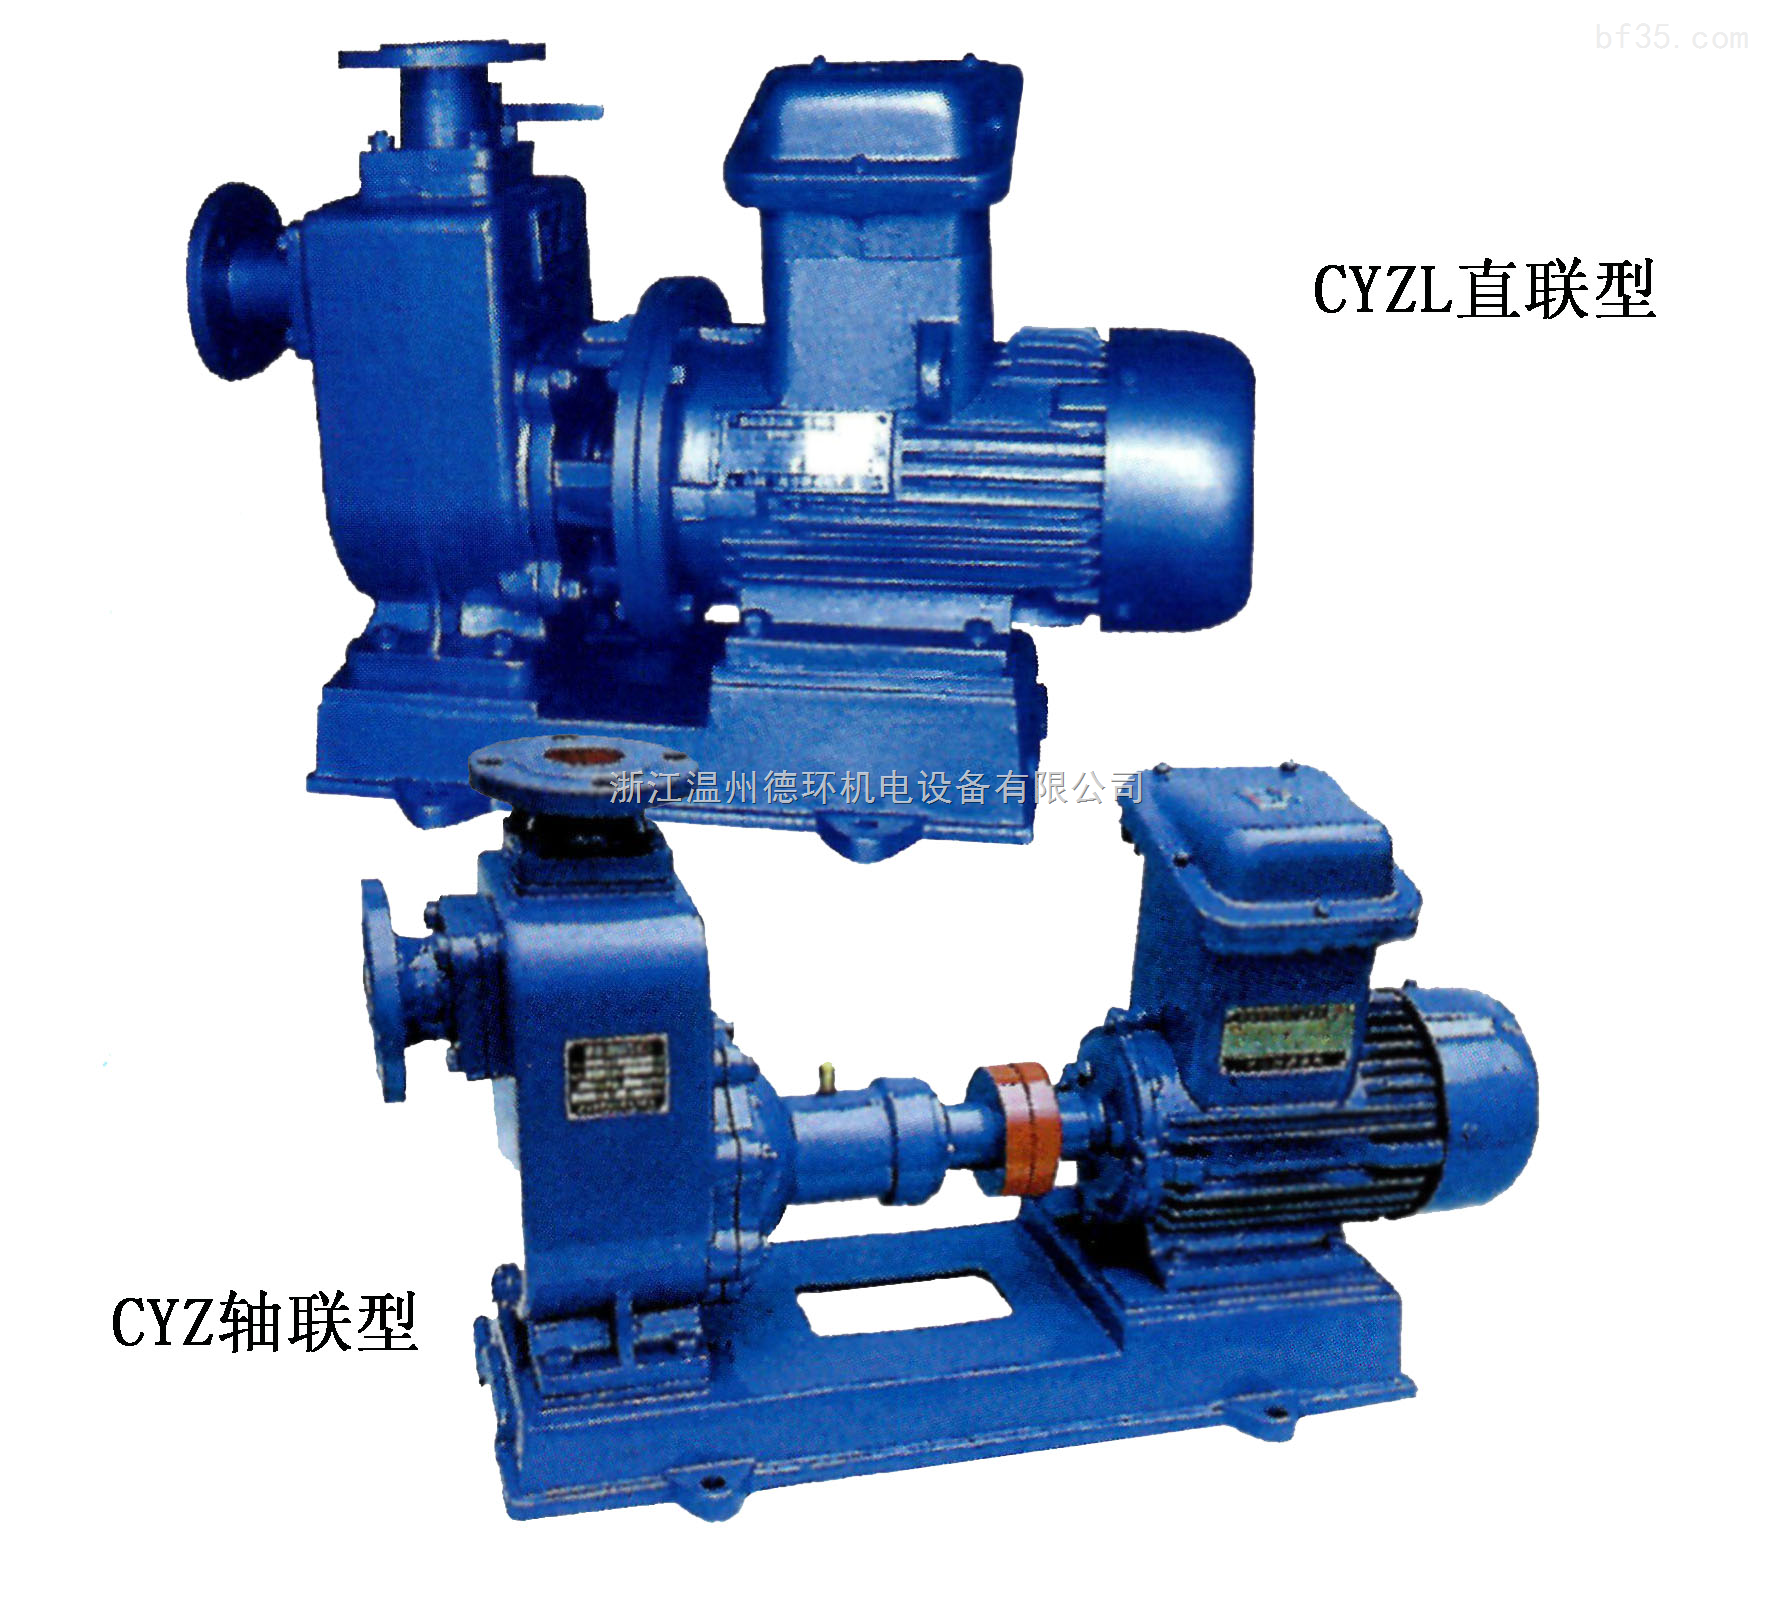 CYZ系列自吸式油泵-CYZ-A、CYZL-A自吸式油